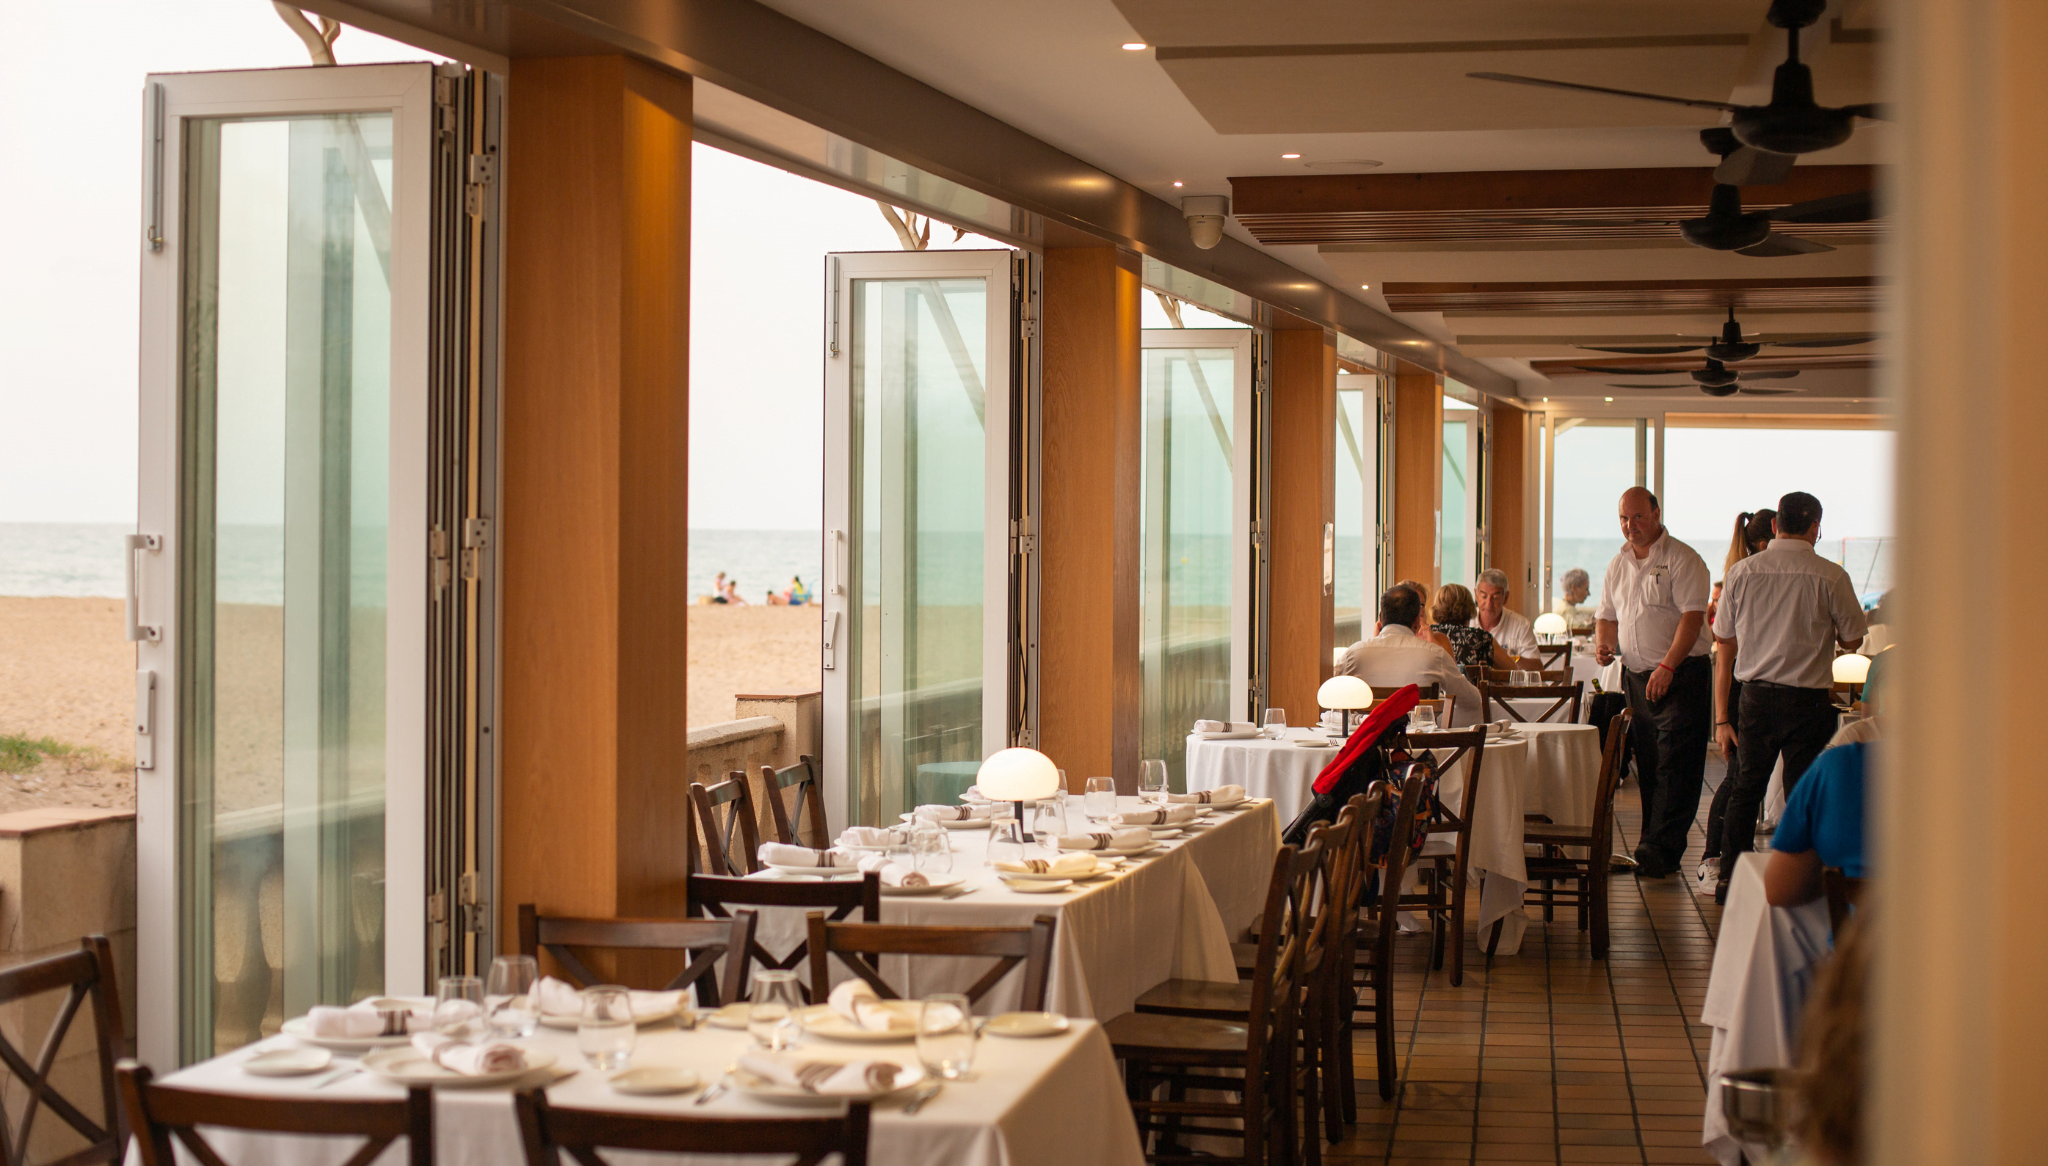 Interior del restaurante con estupendas vistas al mar